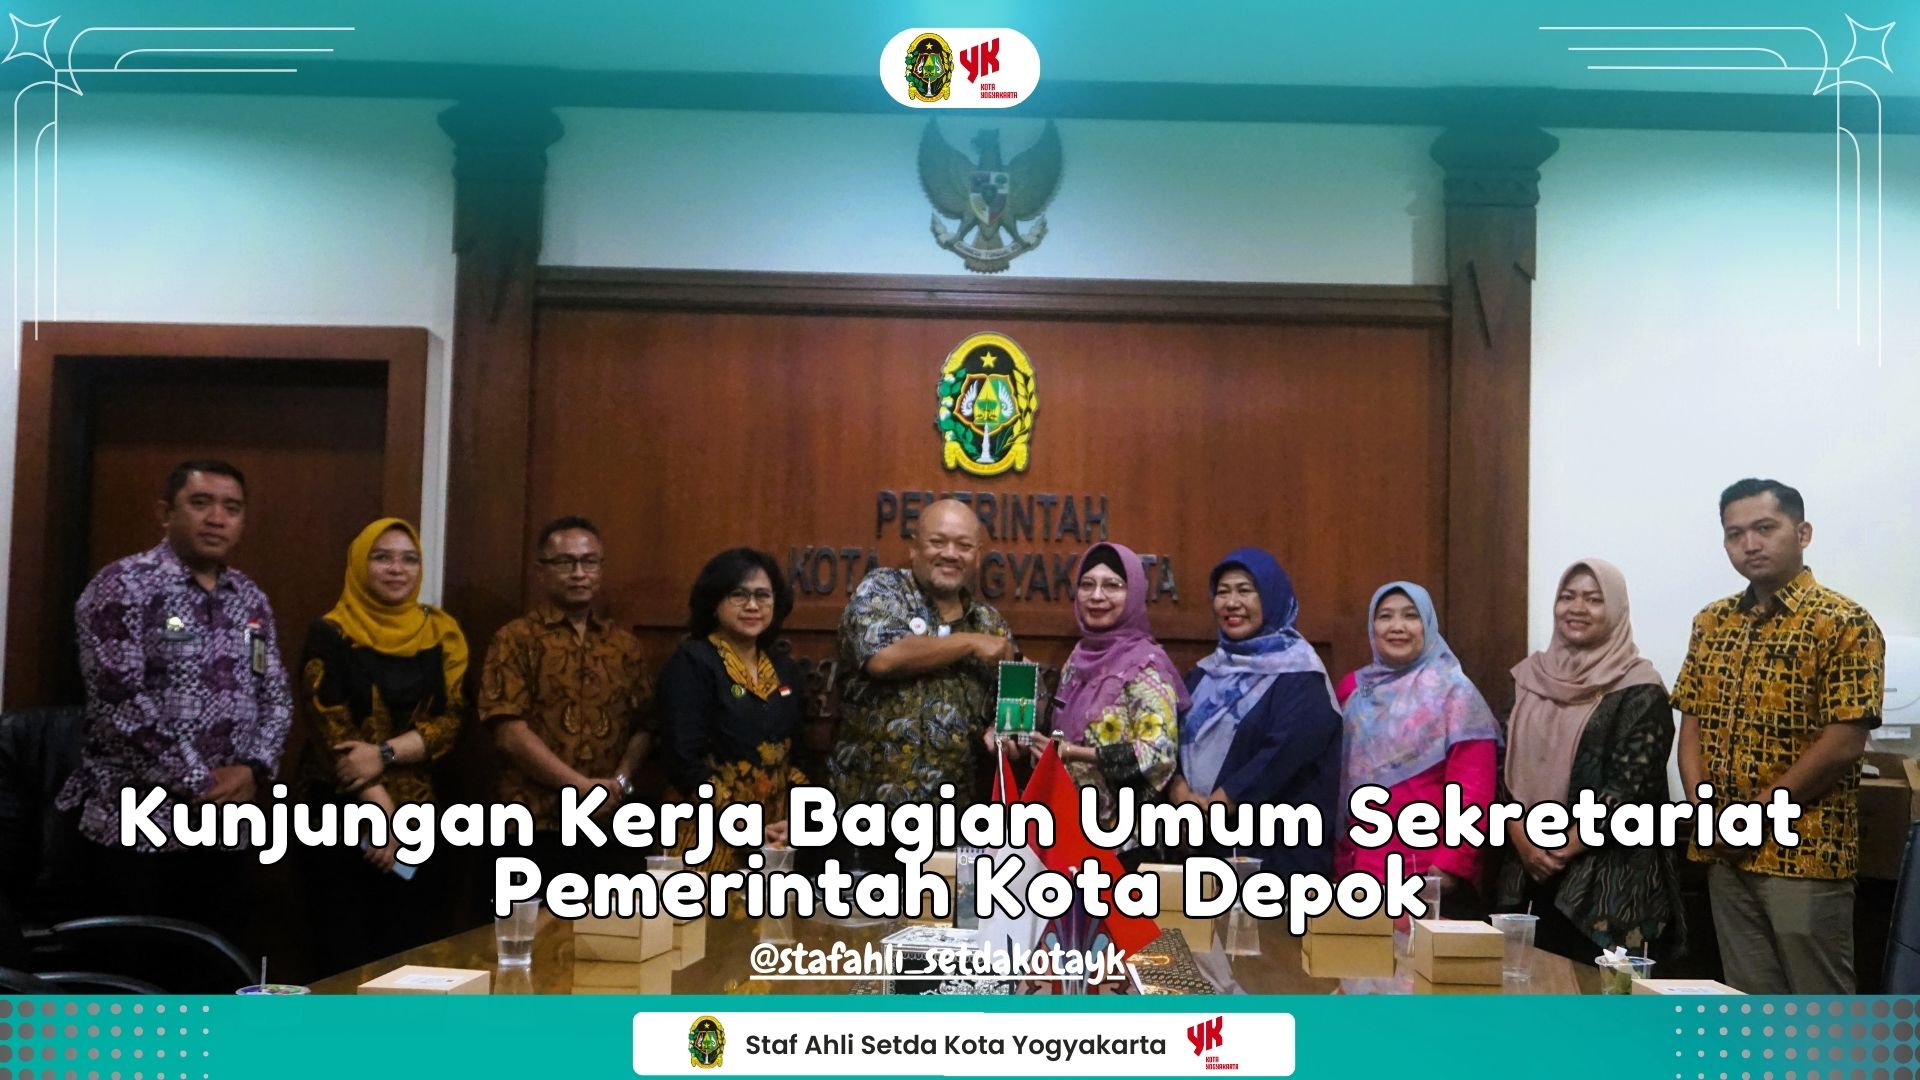 Kunjungan Kerja Sekretariat Daerah Pemerintah Kota Depok ke Sekretariat Daerah Kota Yogyakarta